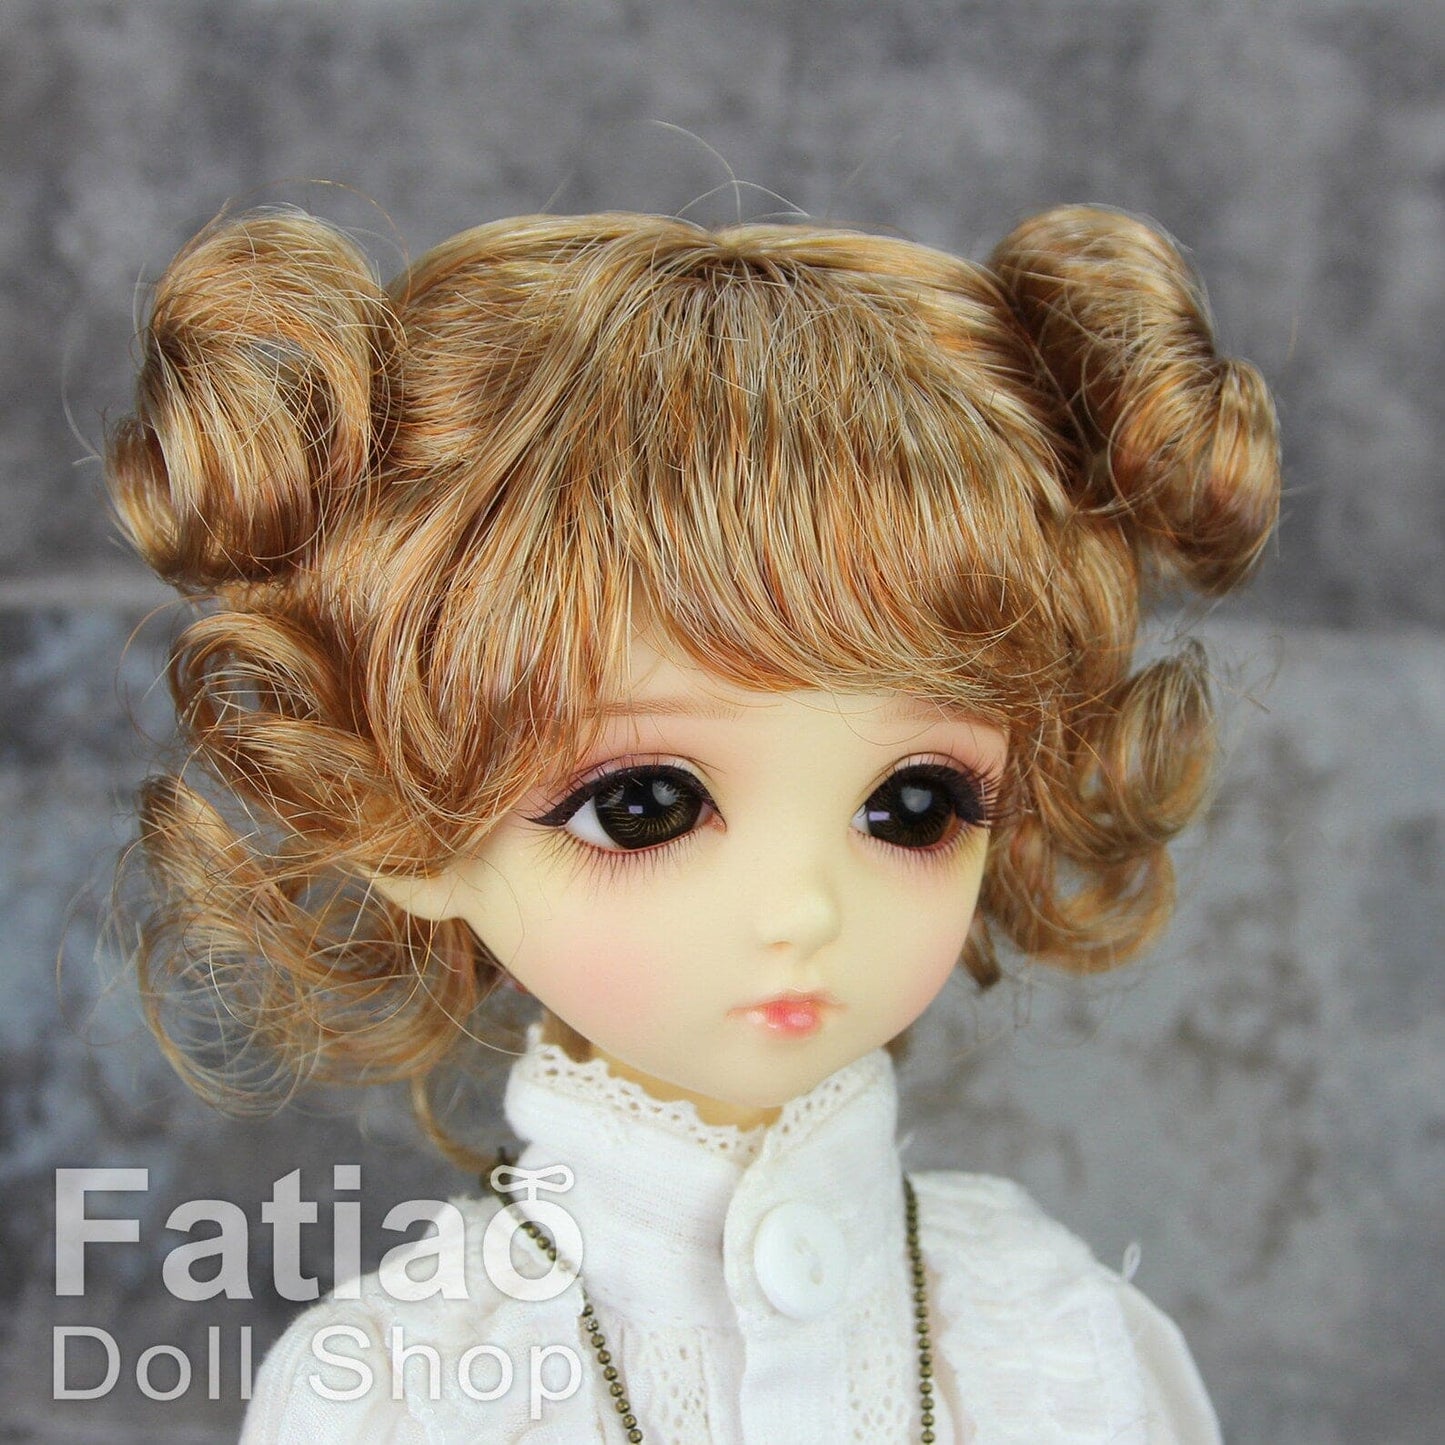 【Fatiao Doll Shop】FWF-325 娃用假髮 多色 / 7-8吋 BJD 4分 iMda3.0